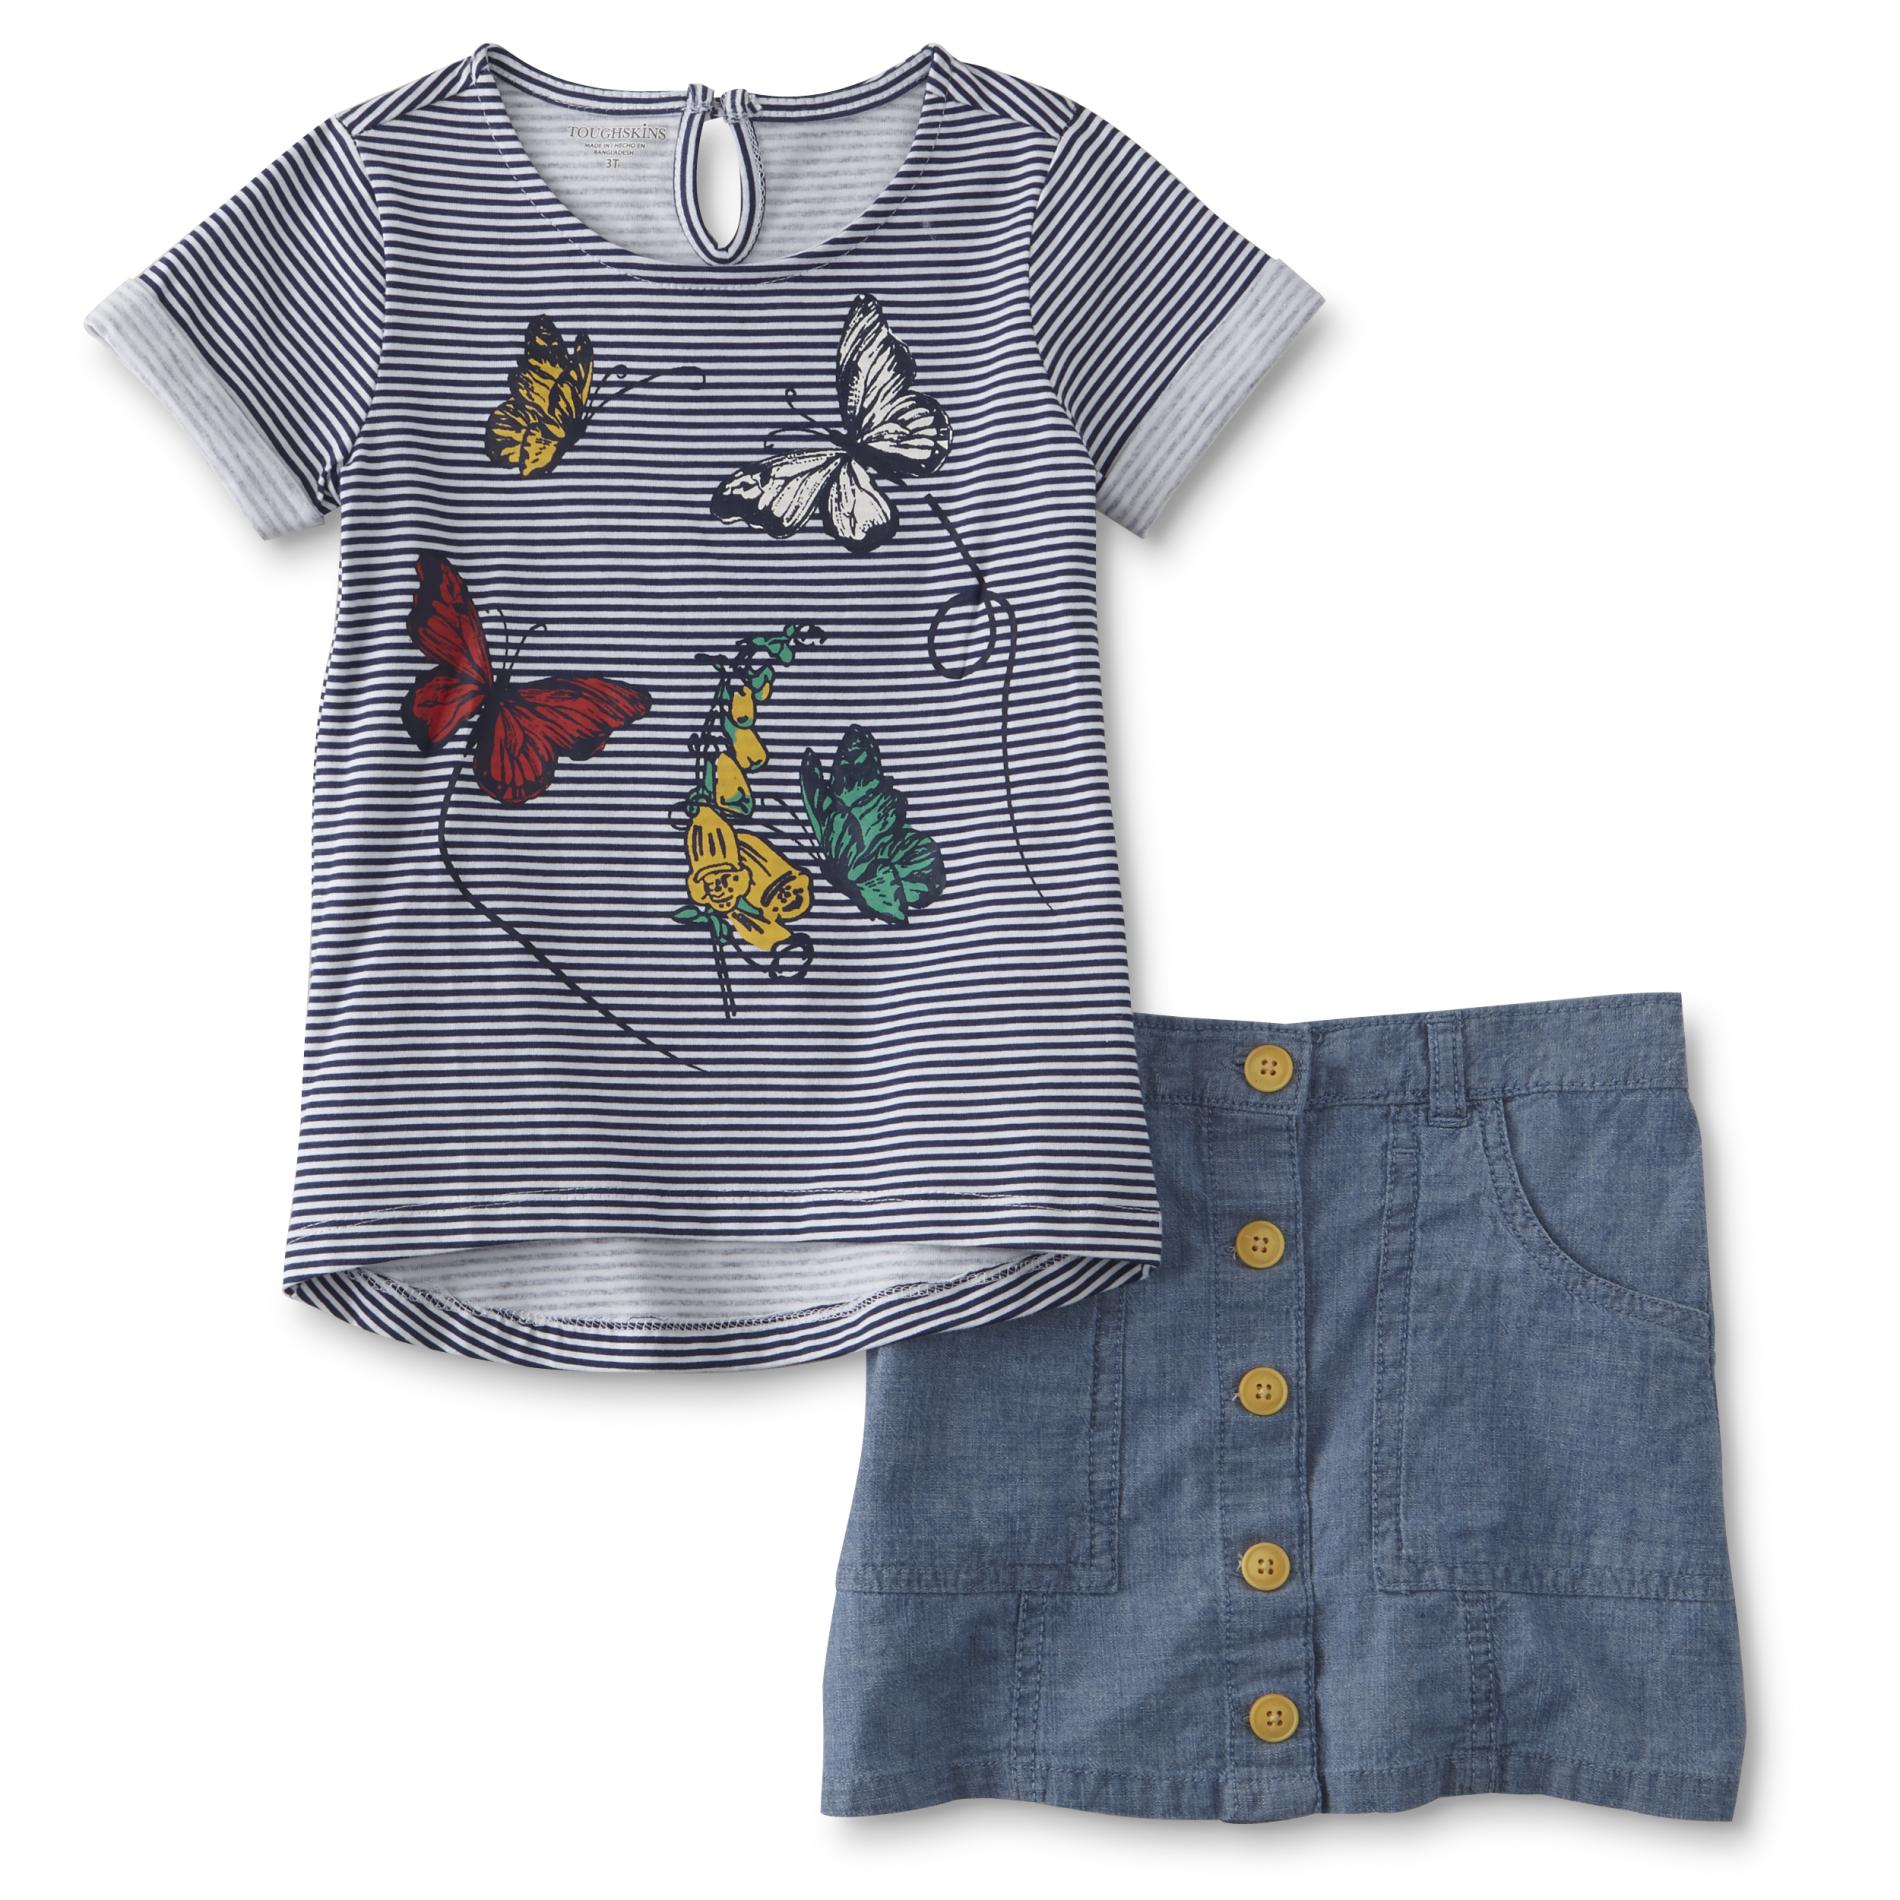 Toughskins Infant & Toddler Girls' Graphic T-Shirt & Skirt - Butterflies & Striped